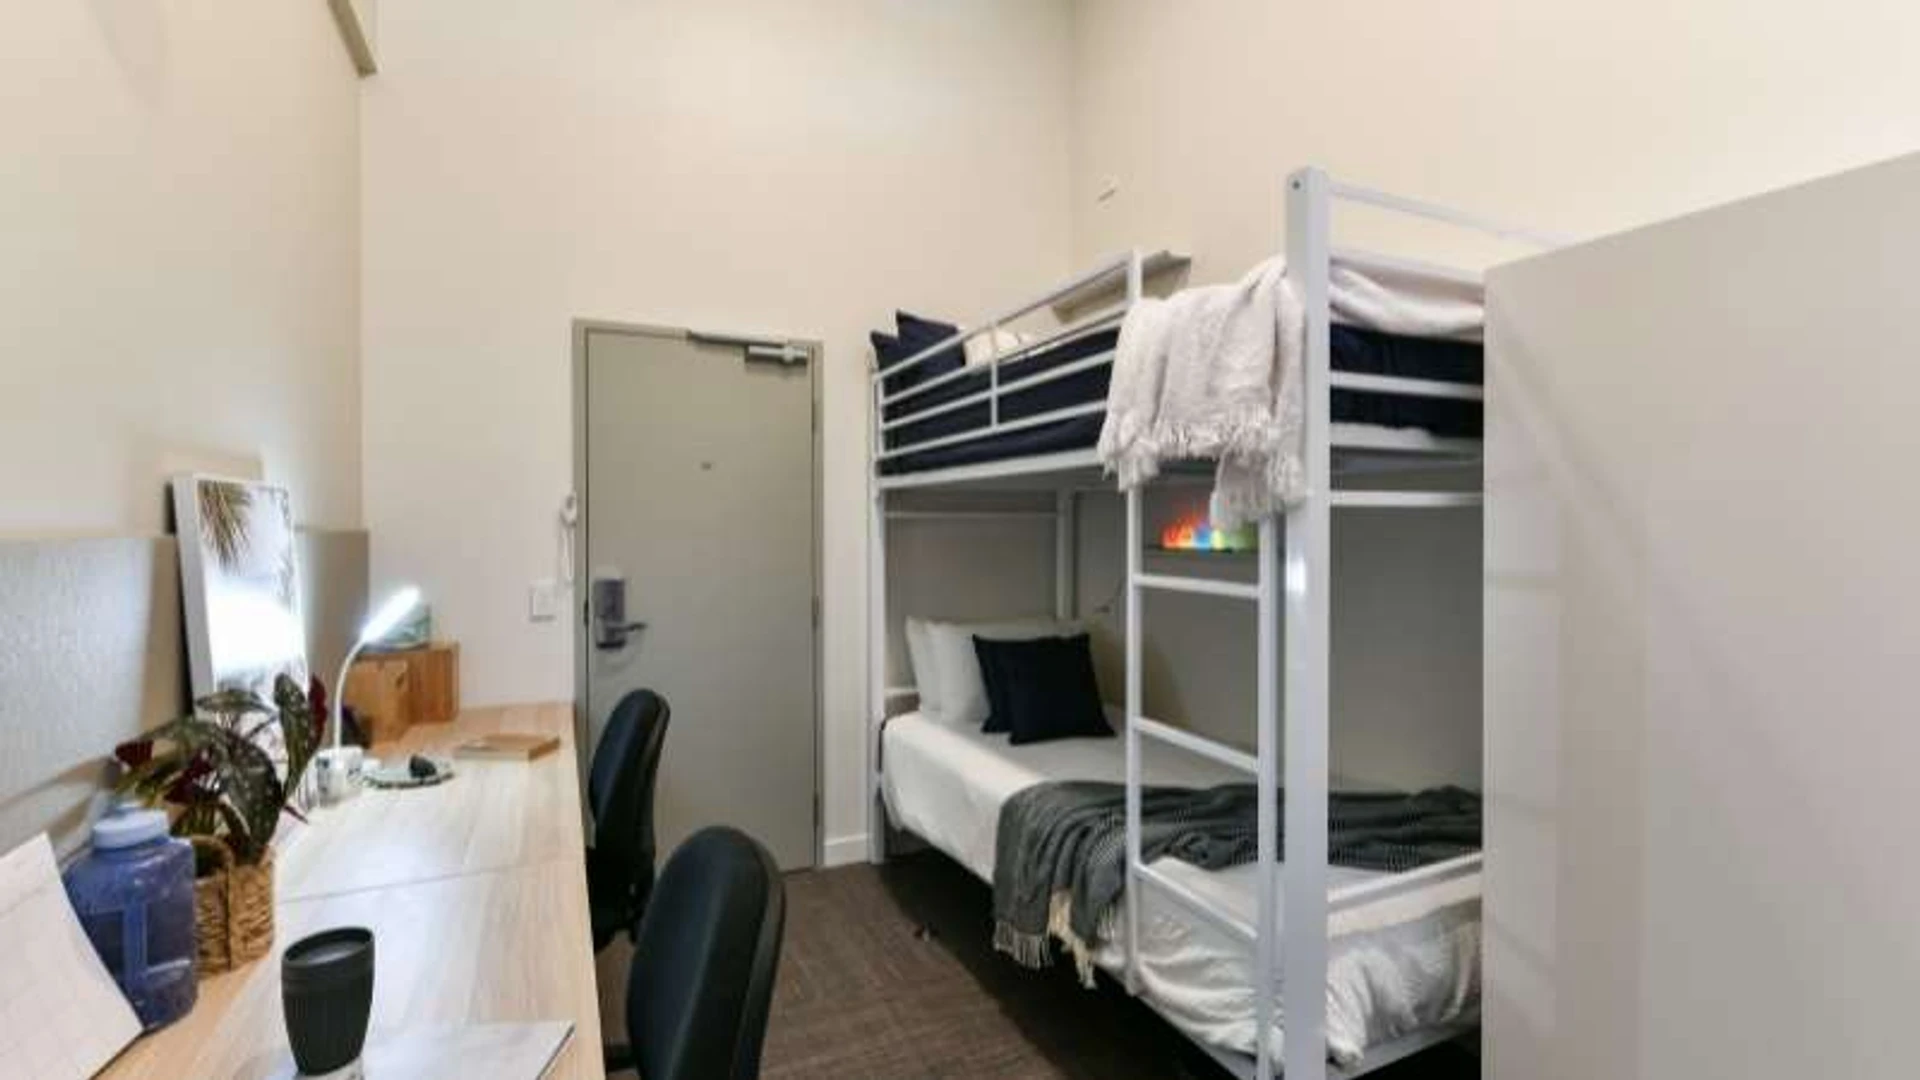 Quarto para alugar com cama de casal em Brisbane